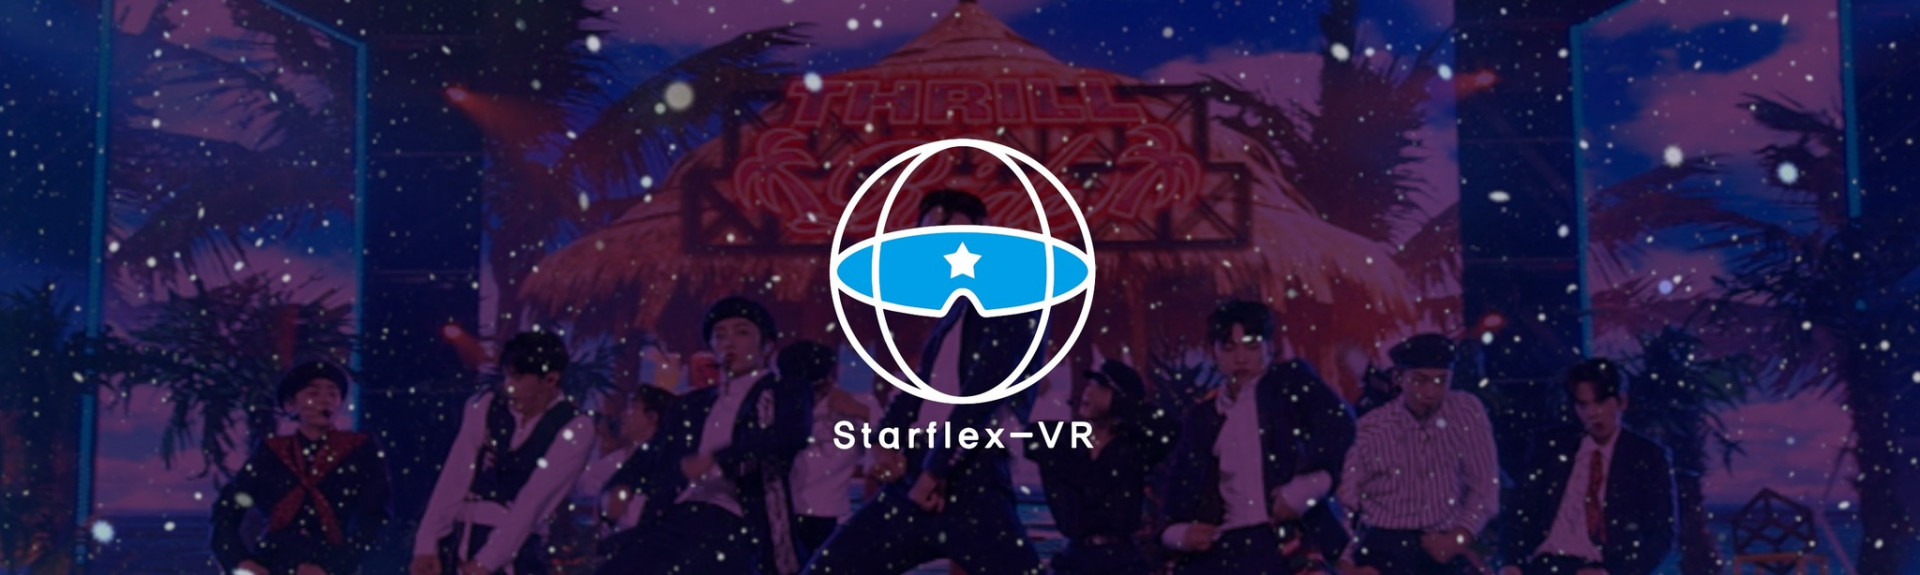 Starflex-VR